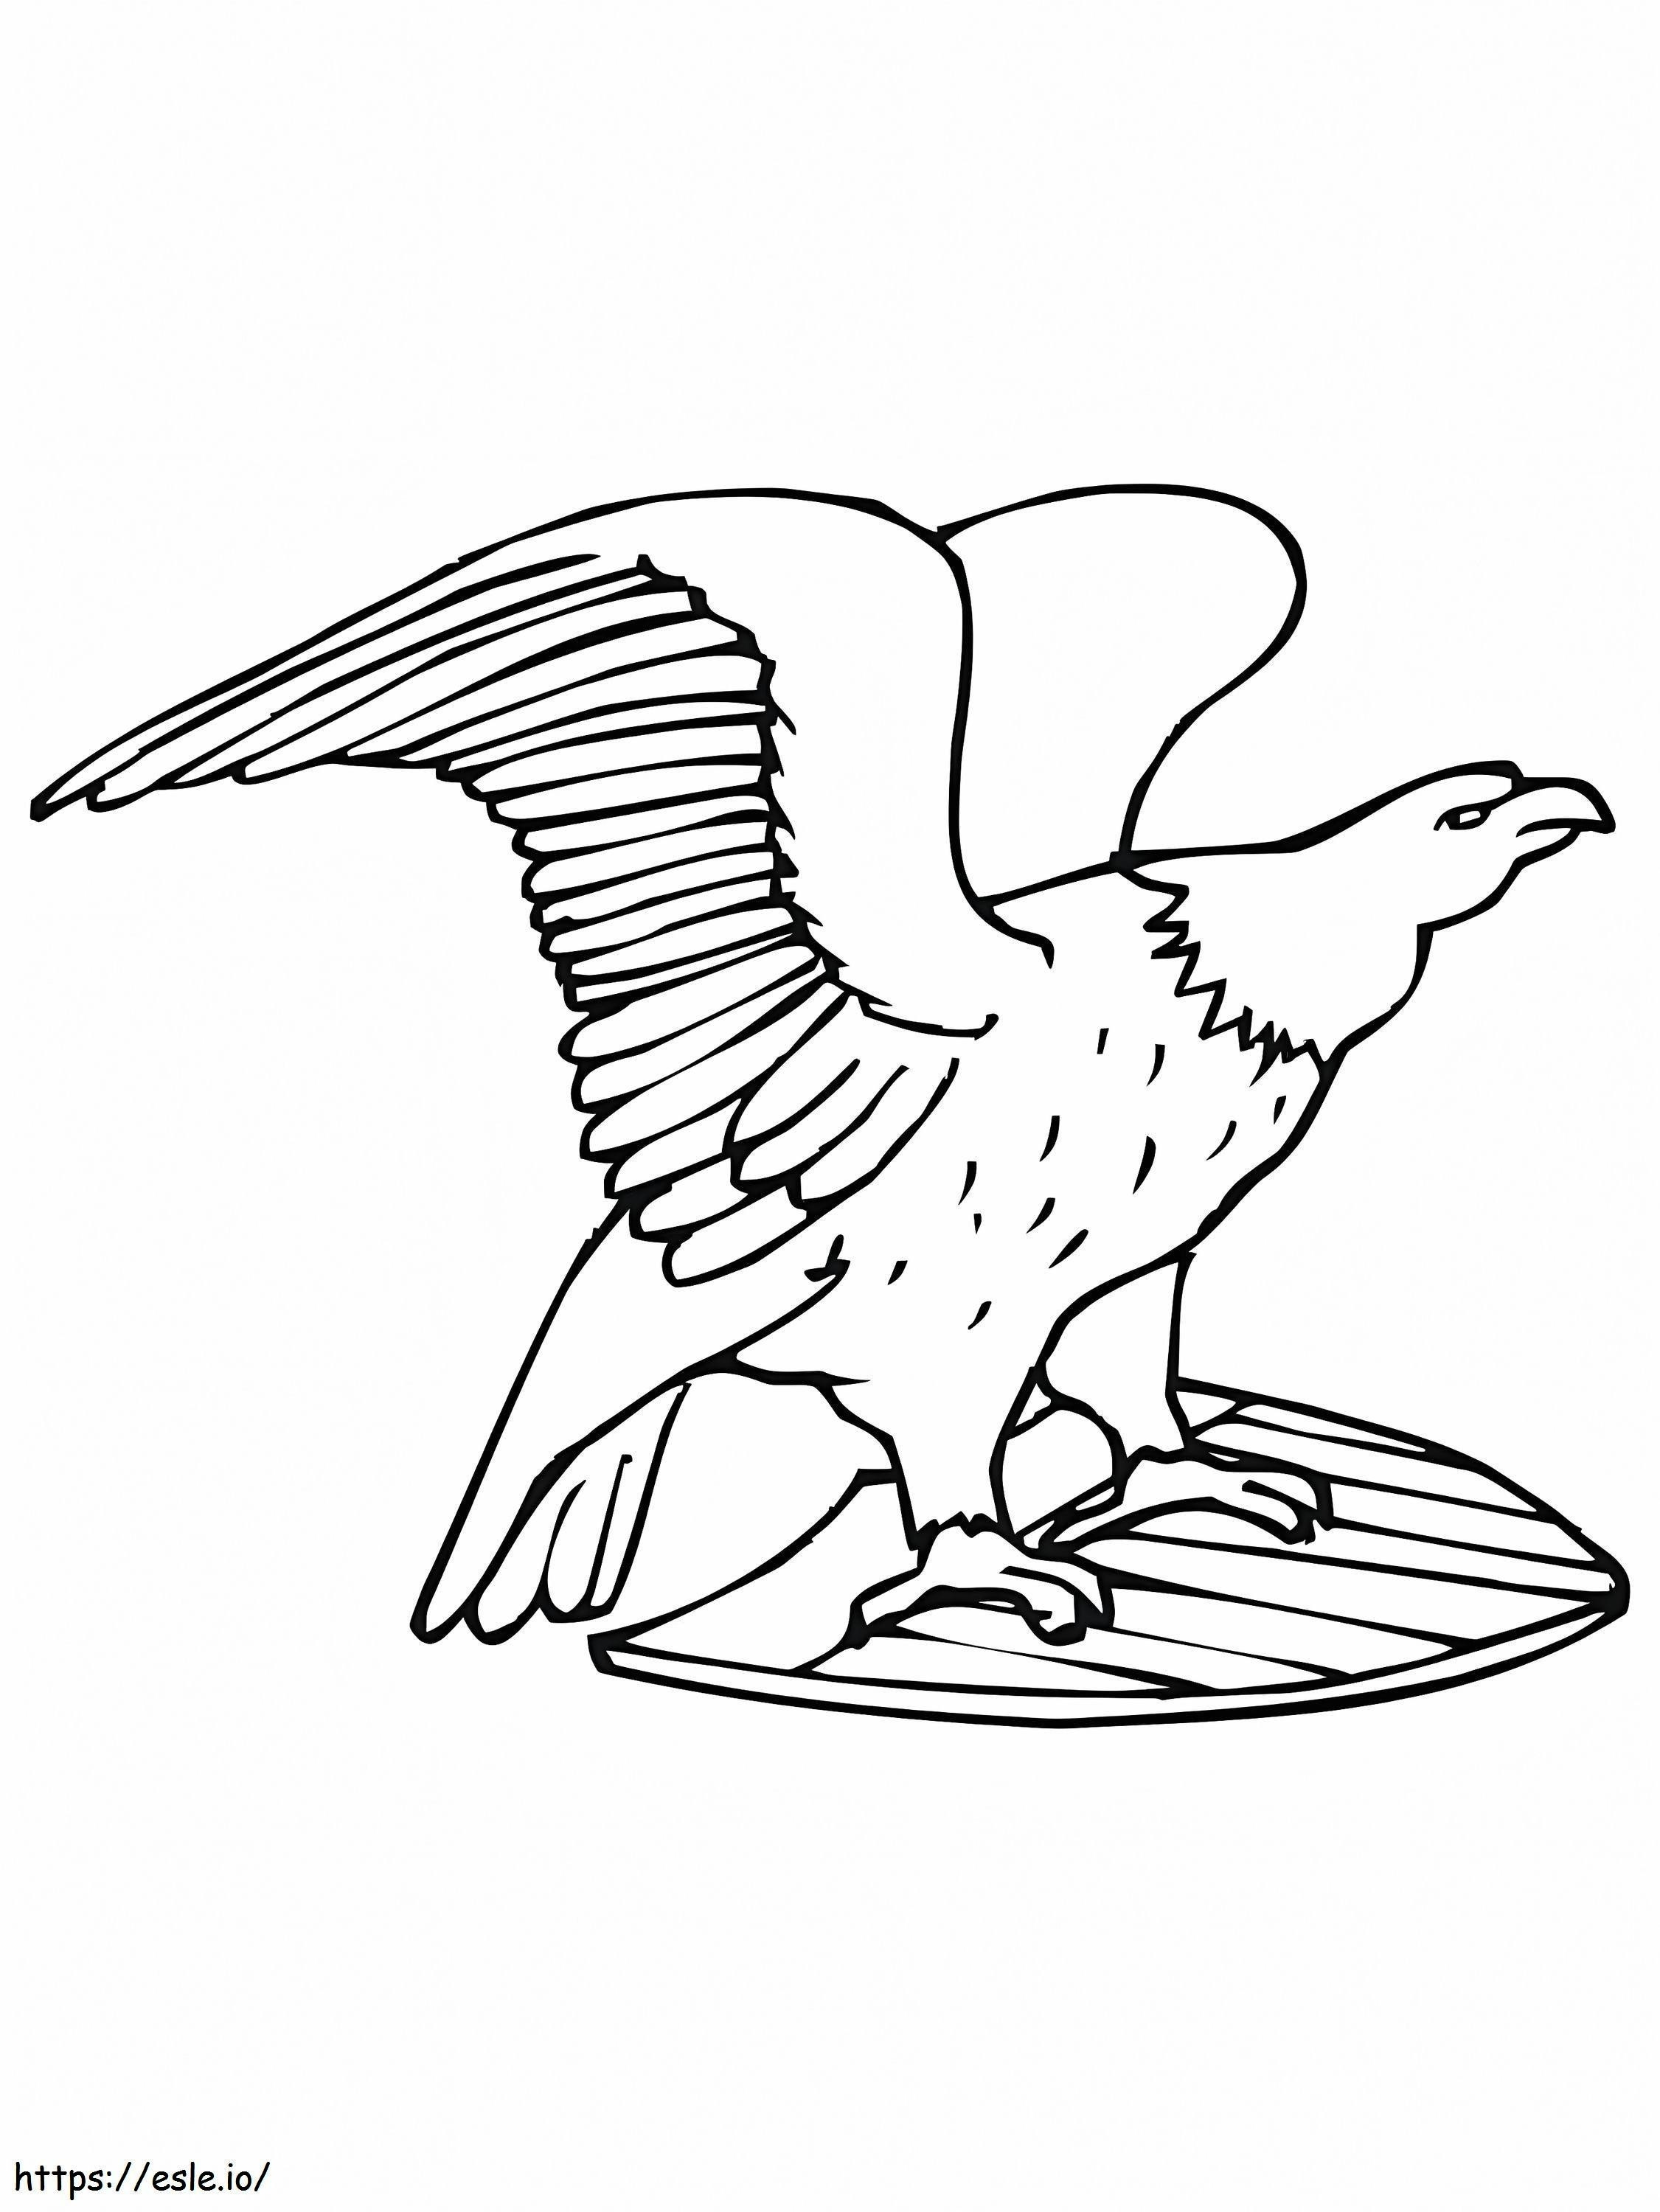 Águila calva estadounidense para colorear